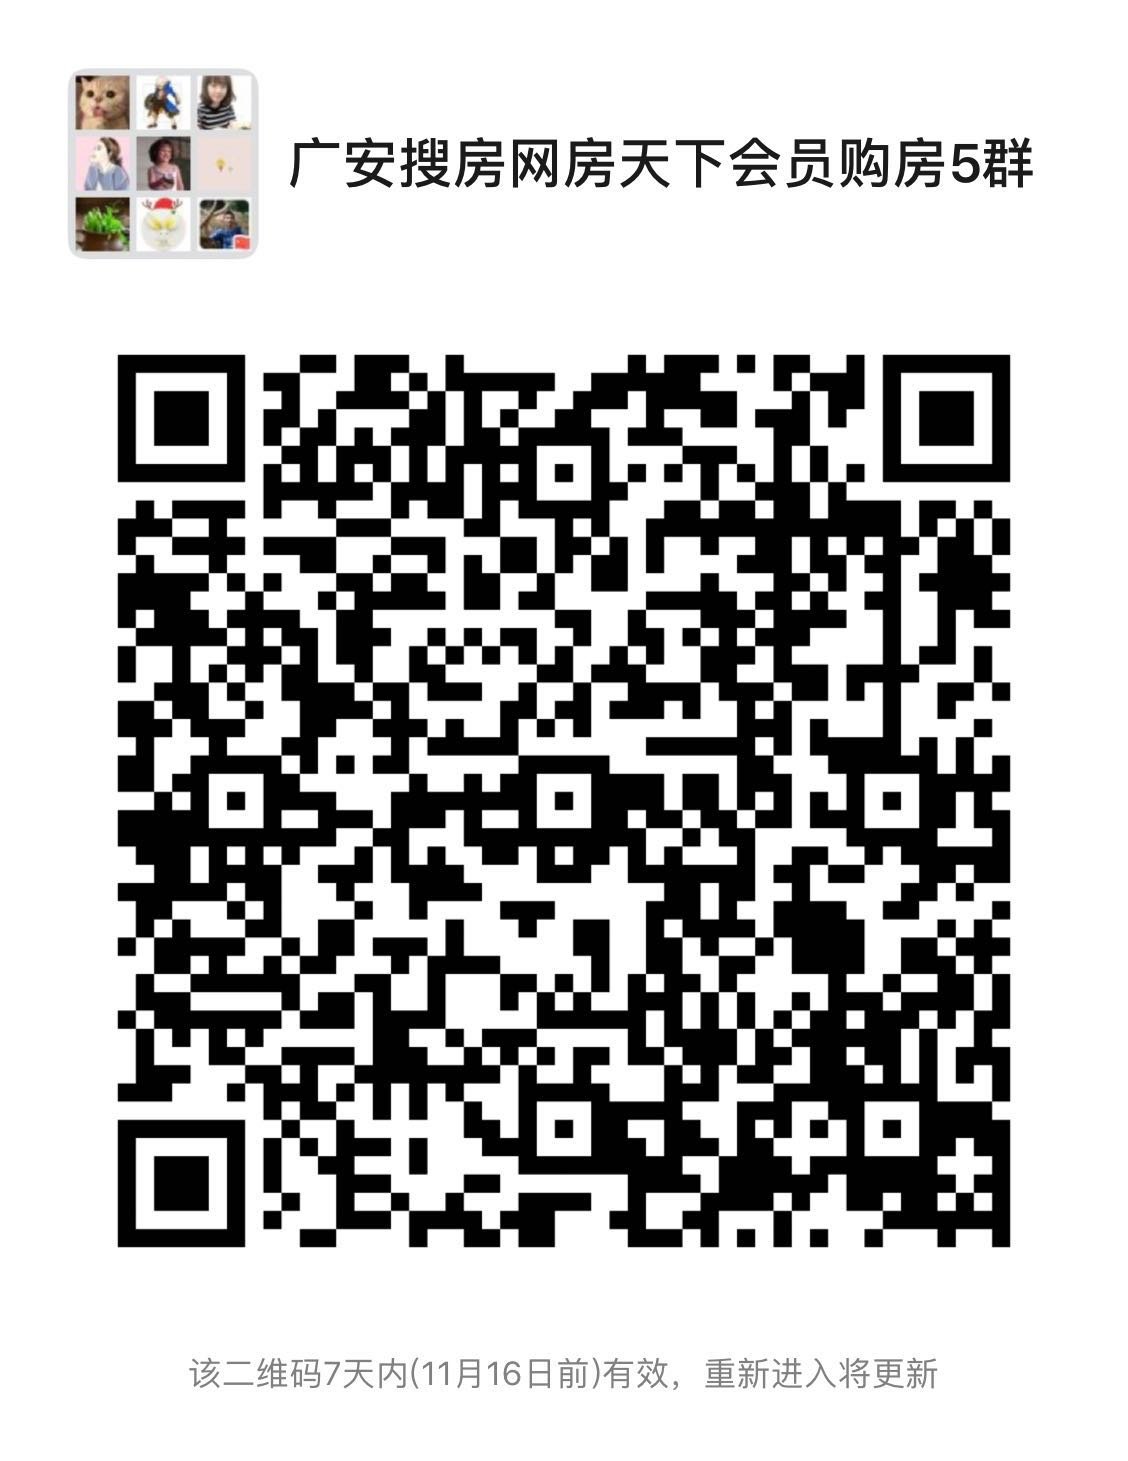 广安楼市周报(2020.11.02-11.08)：中心城区网签157套 均价5183元/㎡